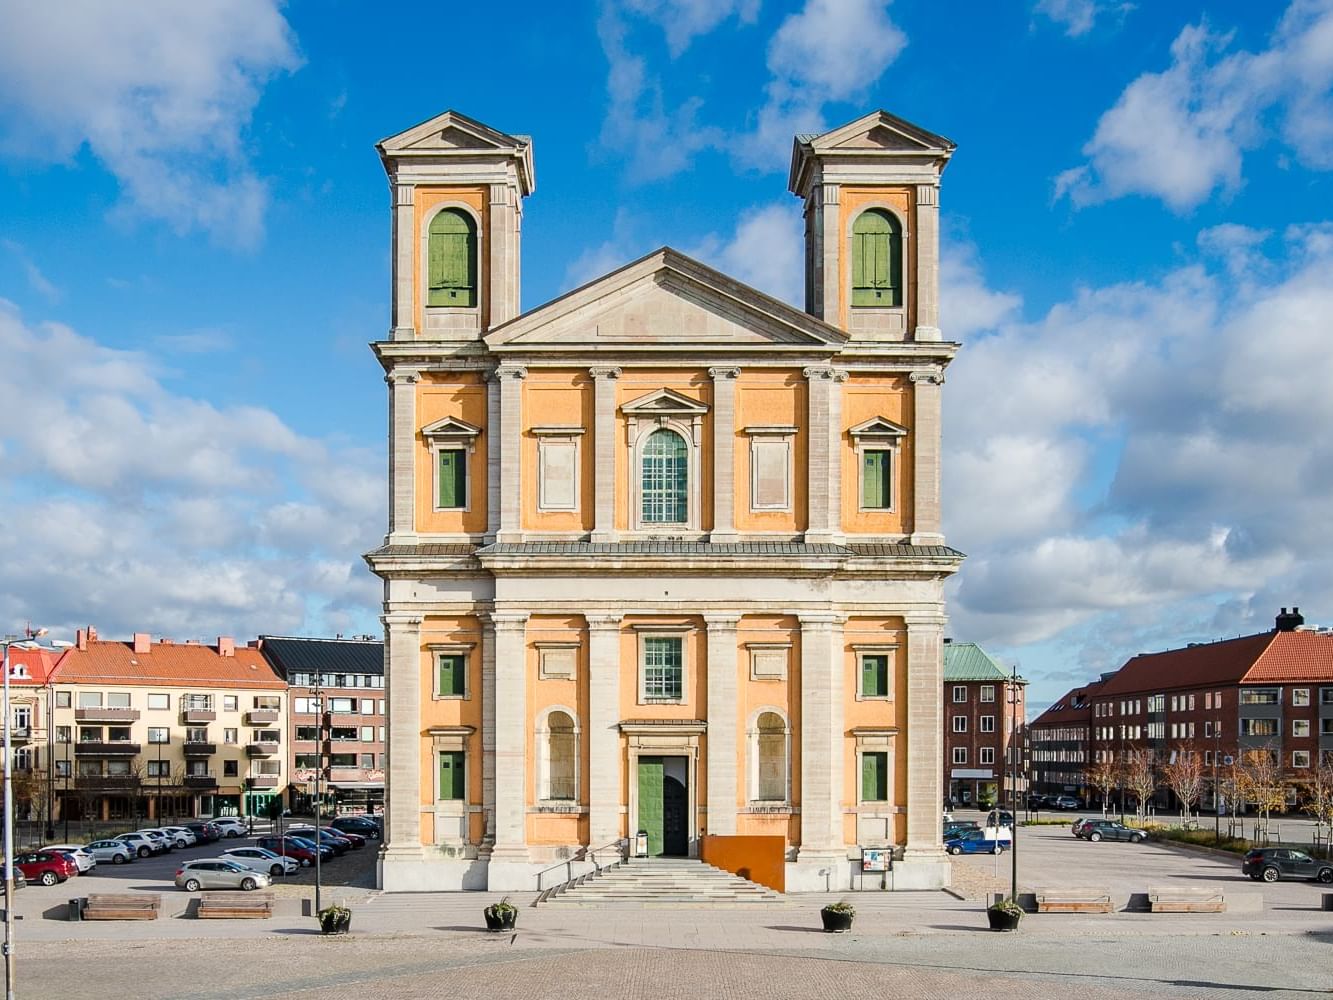 The Frederik Church